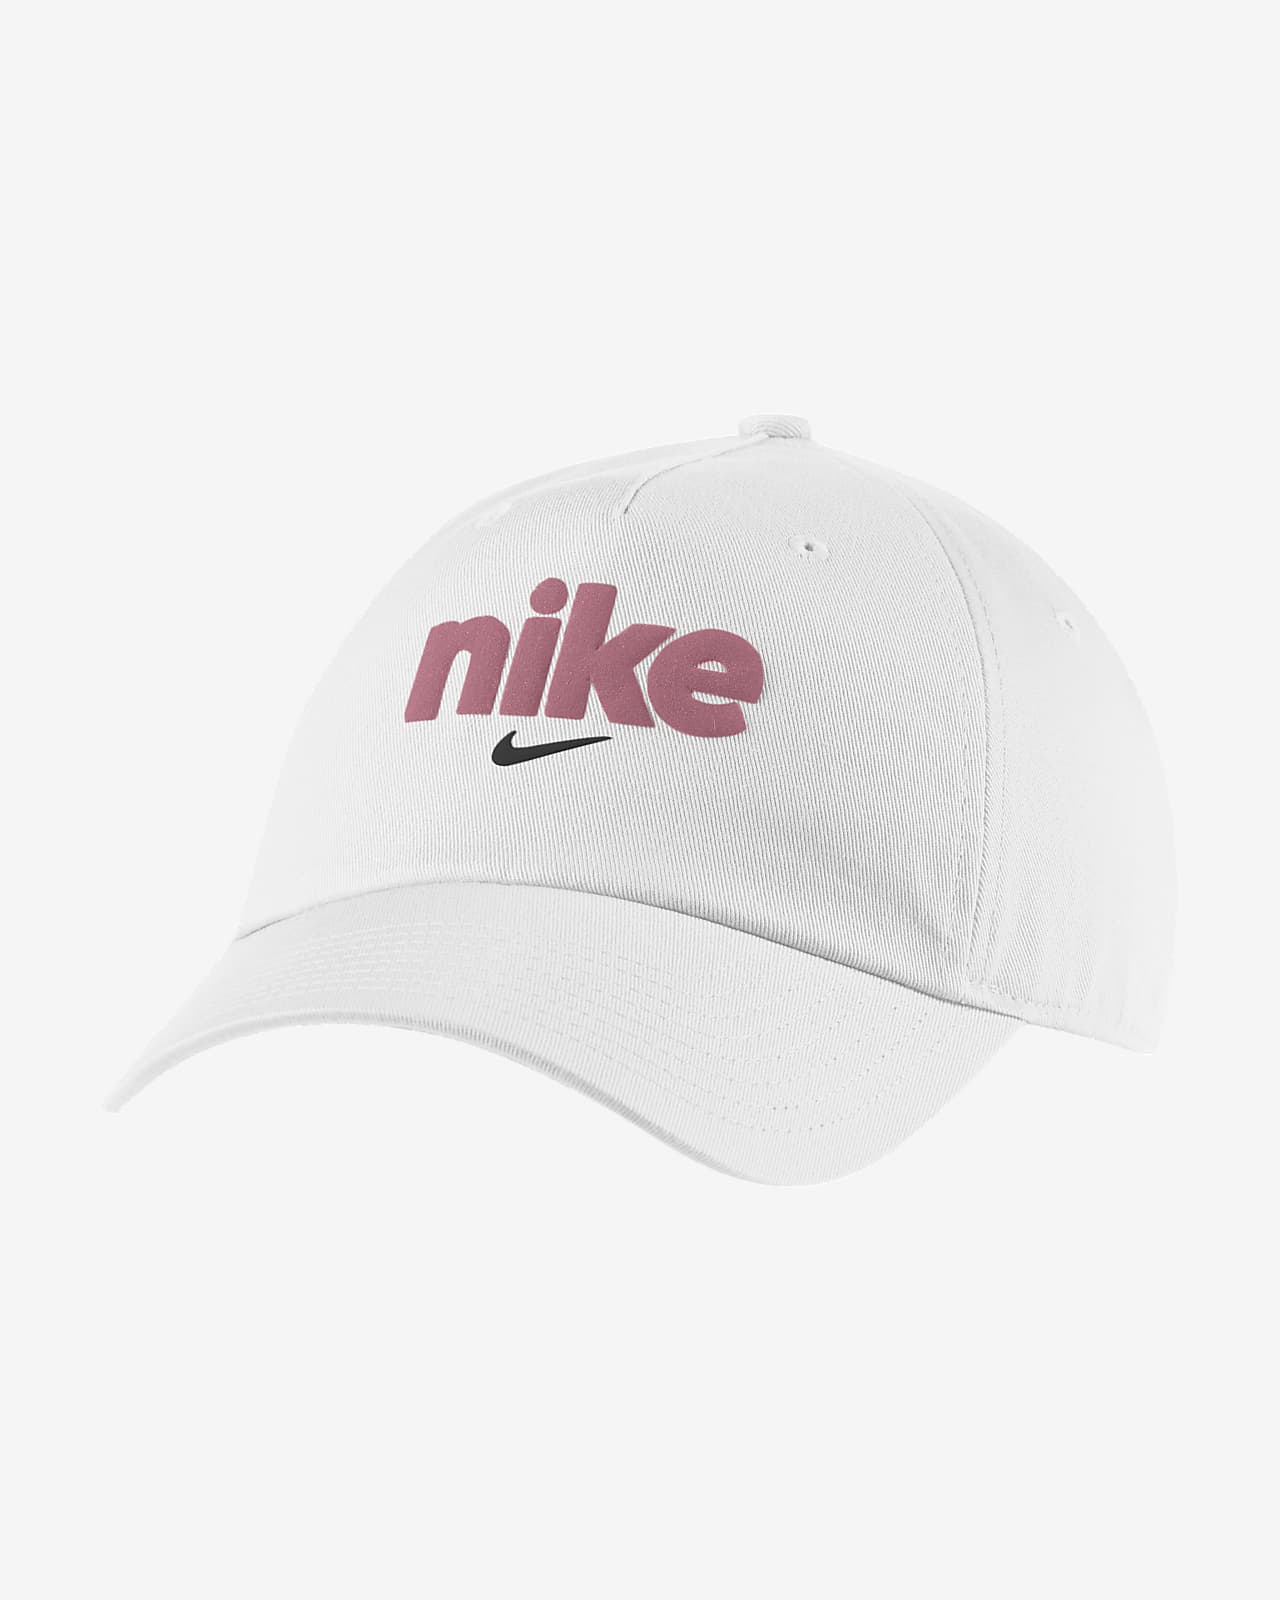 Gorra ajustable para mujer Nike Heritage Nike.com